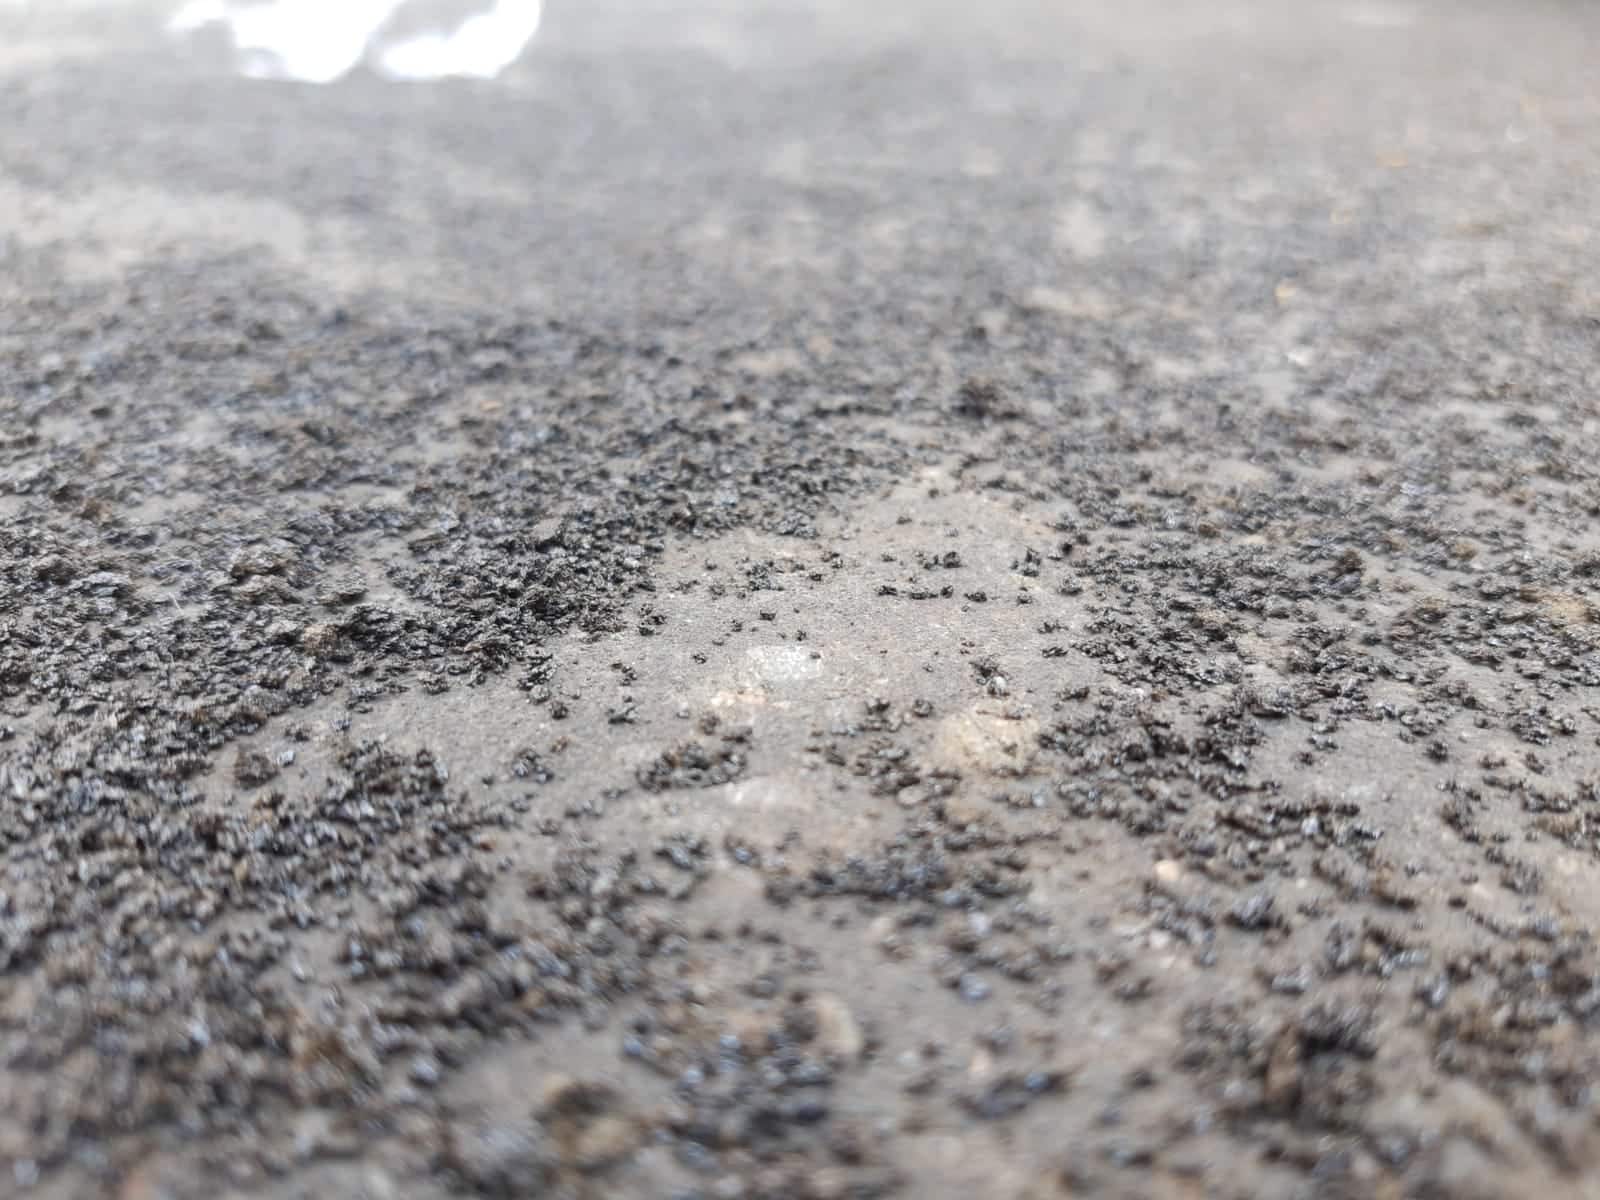 Eruzione dell’Etna, caduta di cenere e lapilli: i Comuni dispongono la pulizia delle strade